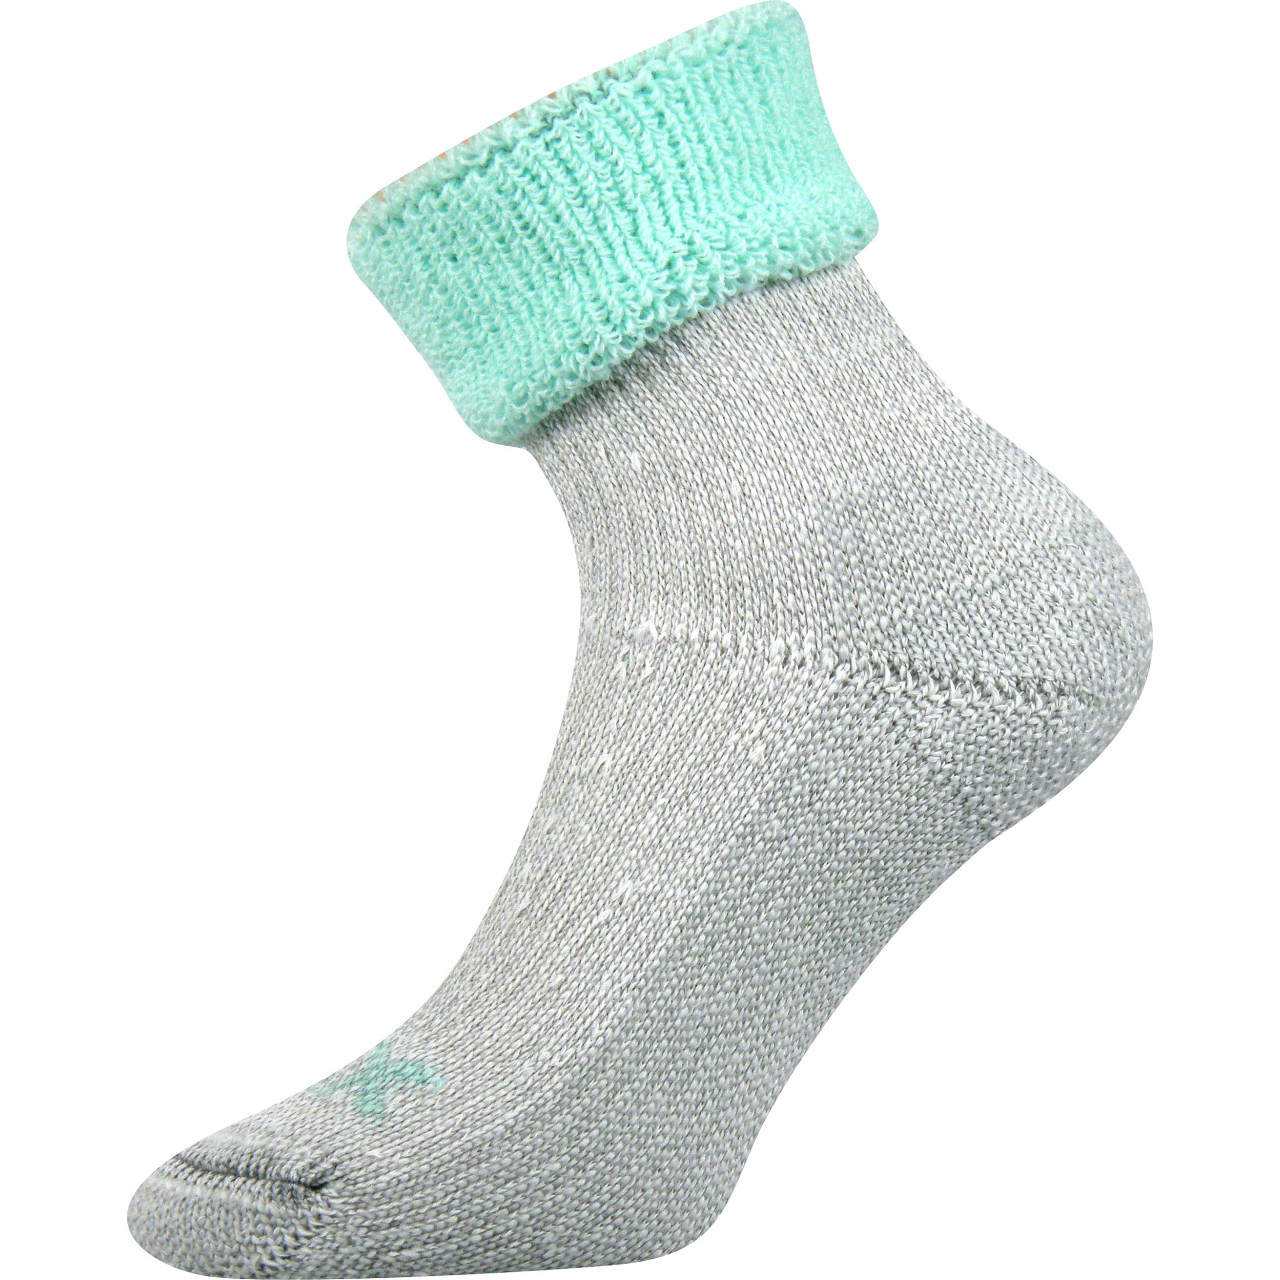 Ponožky dámské termo Voxx Quanta - šedé-světle zelené, 35-38